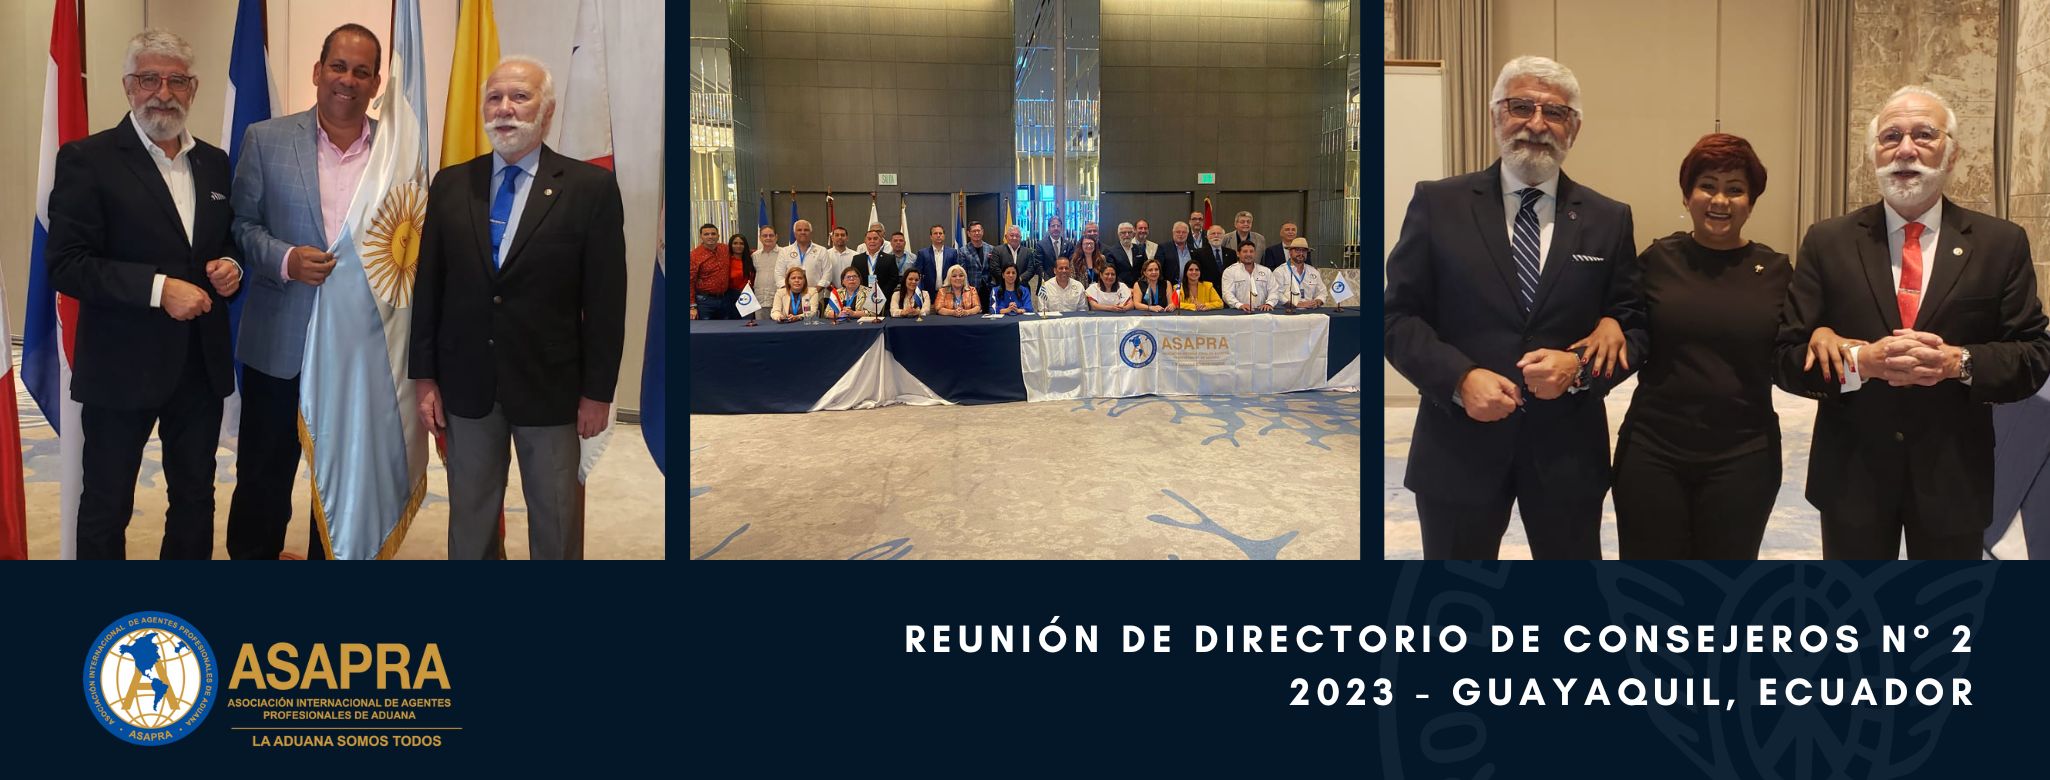 #CDAPresente Reunión de Directorio de Consejeros n° 2 - 2023